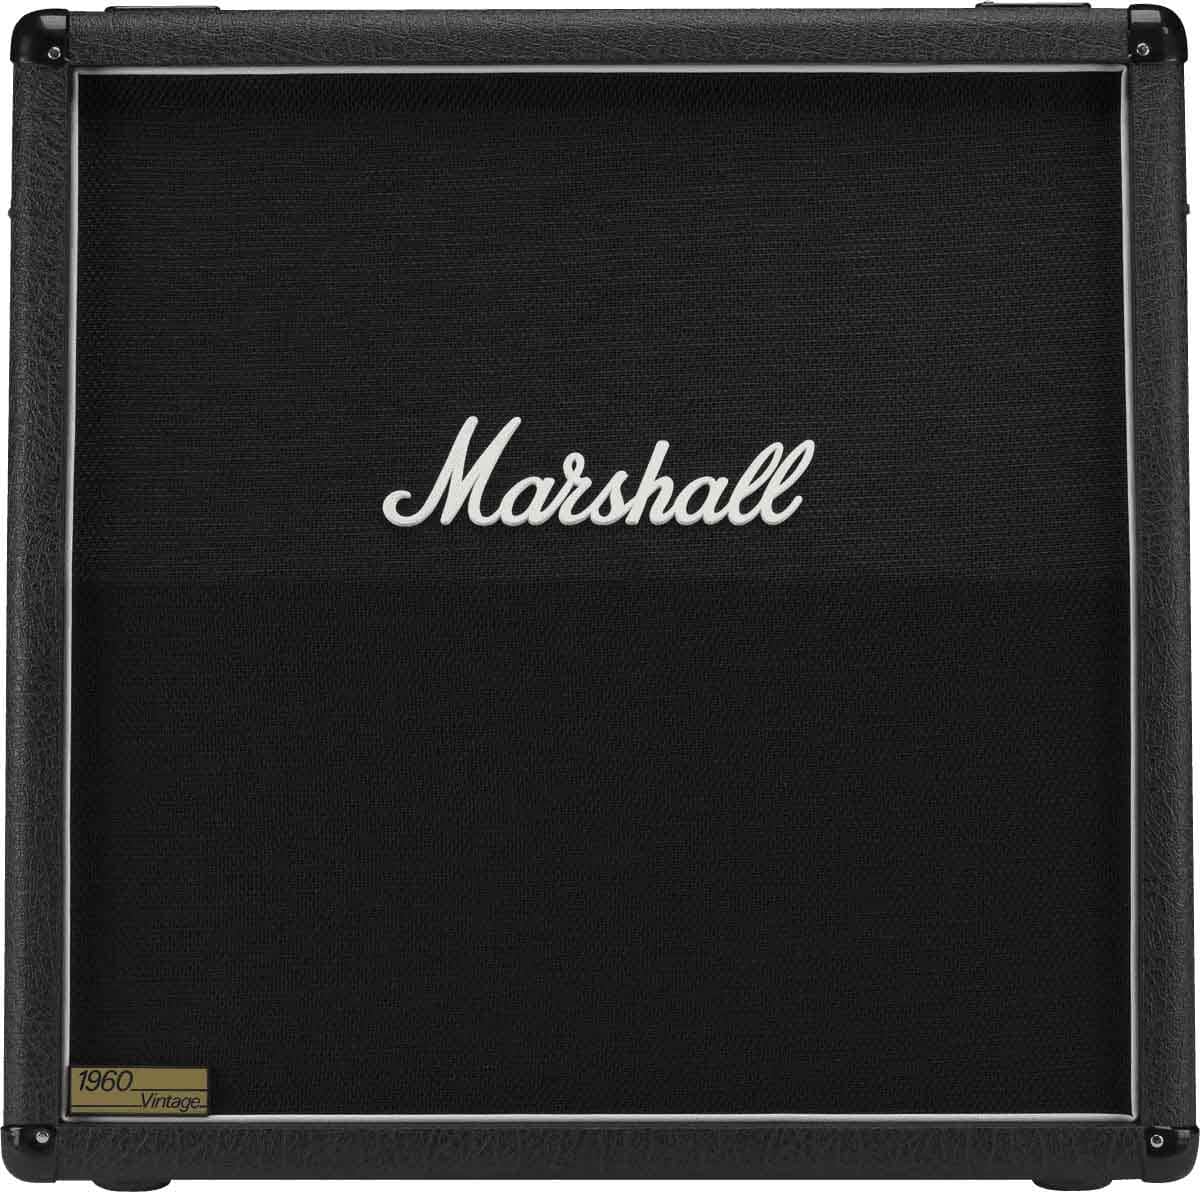 MARSHALL 1960AV - B-STOCK